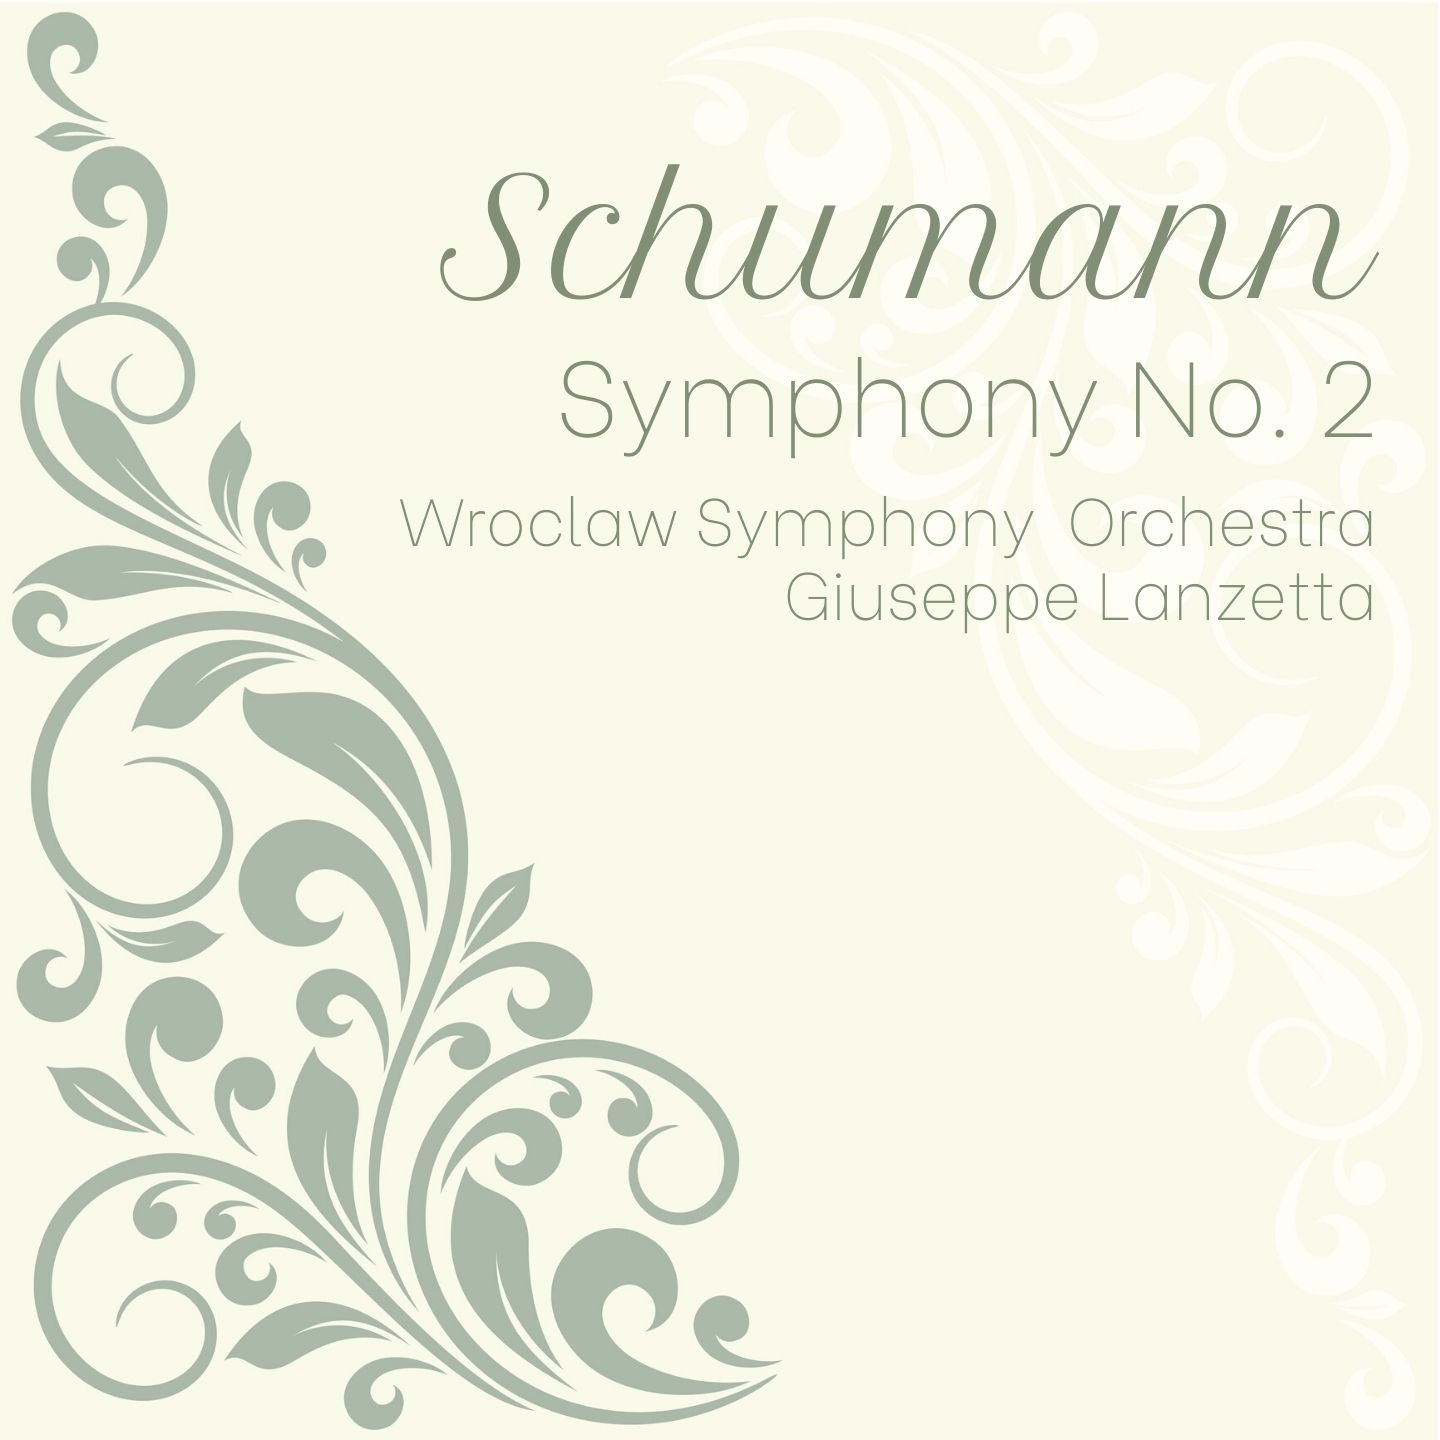 Schumann: Symphony No. 2 in C major, Op. 61